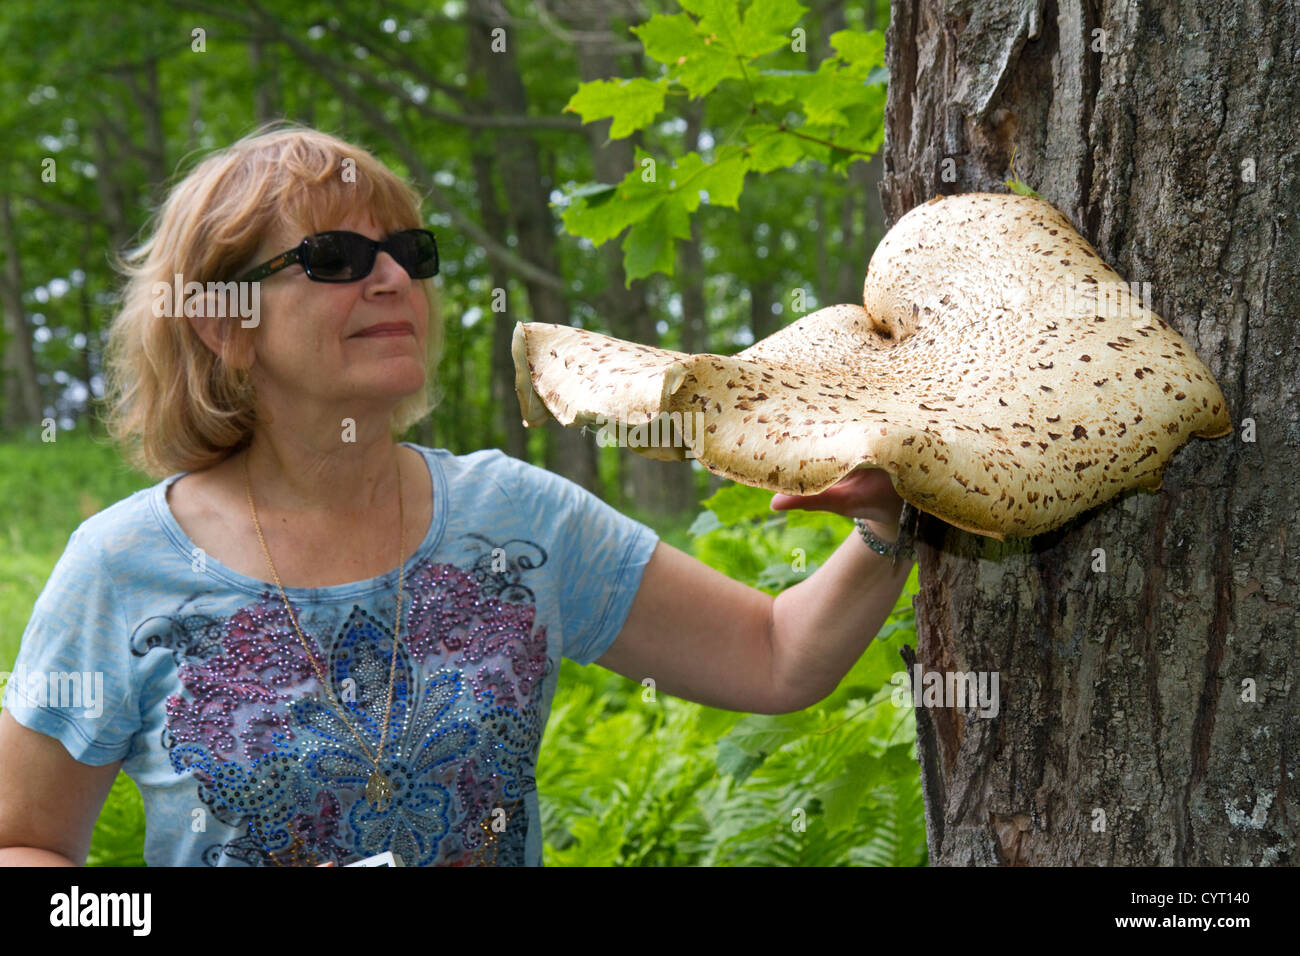 La staffa o mensola funghi a Pictured Rocks National Lakeshore a Lago Superior nella Penisola Superiore del Michigan, Stati Uniti d'America. Foto Stock